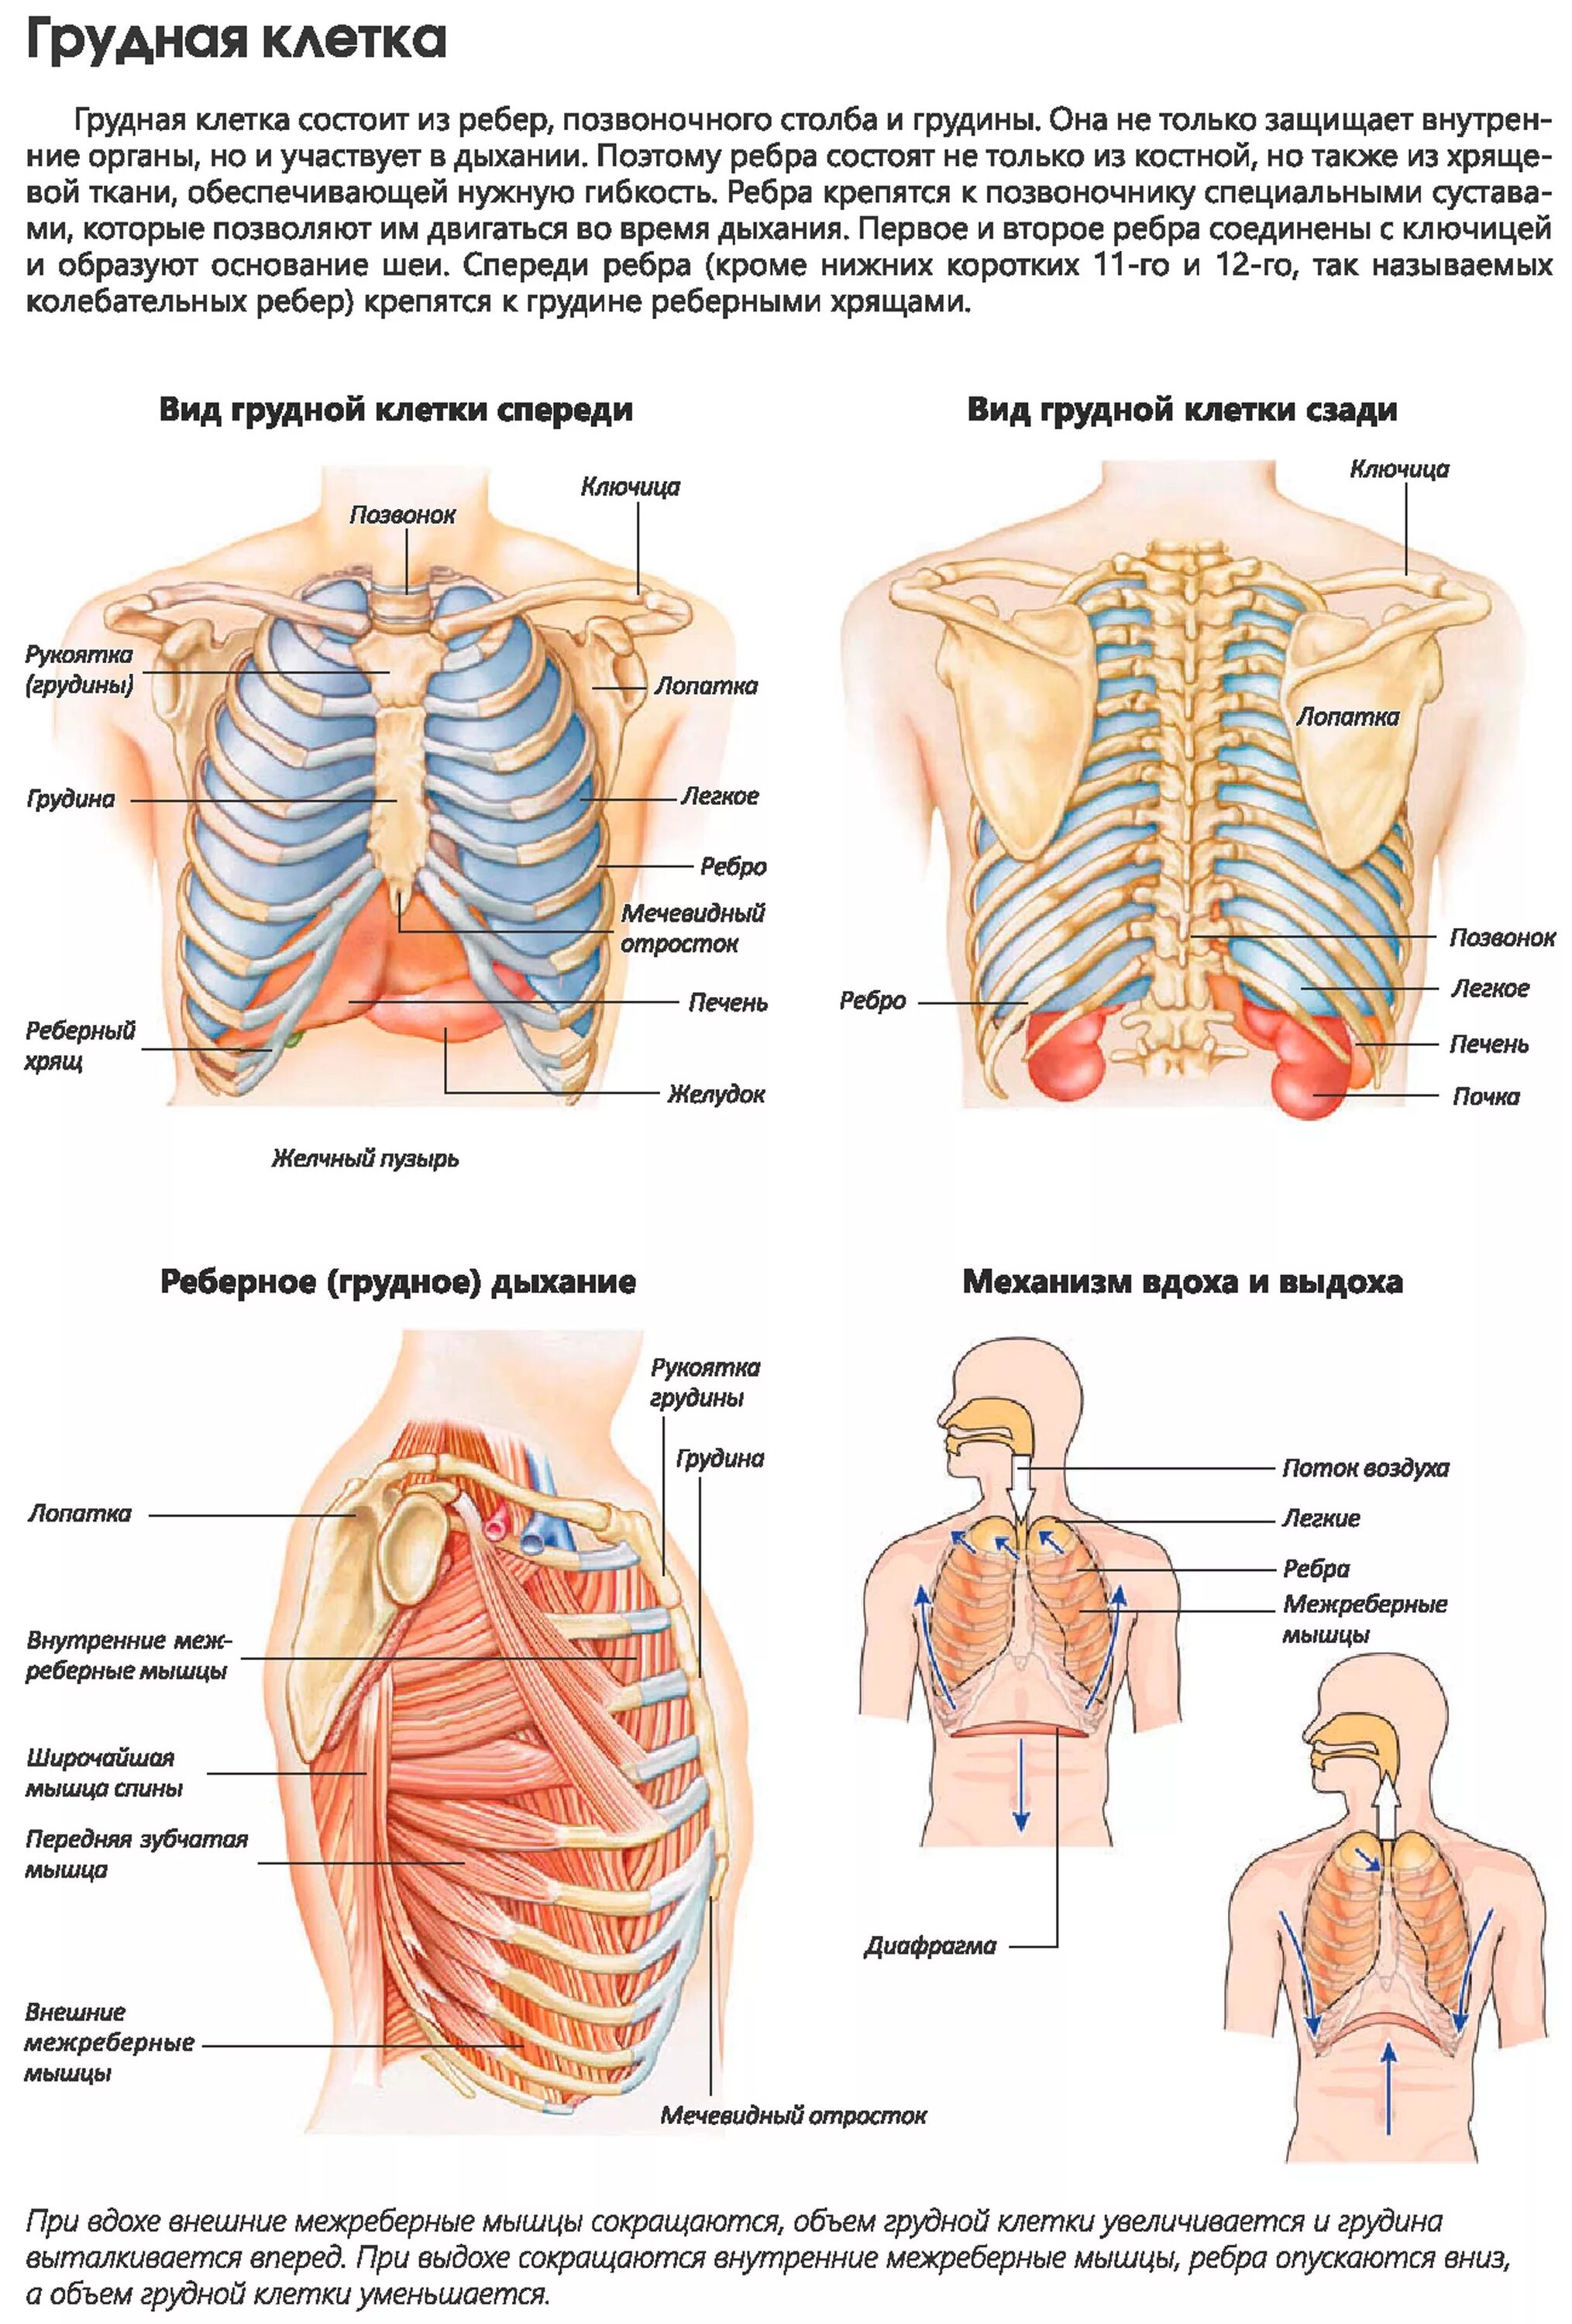 При вдохе болят ребра спереди. Грудная клетка анатомия. Анатомия органов грудной клетки. Анатомия грудной клетки мужчины с органами. Строение грудной клетки спереди.